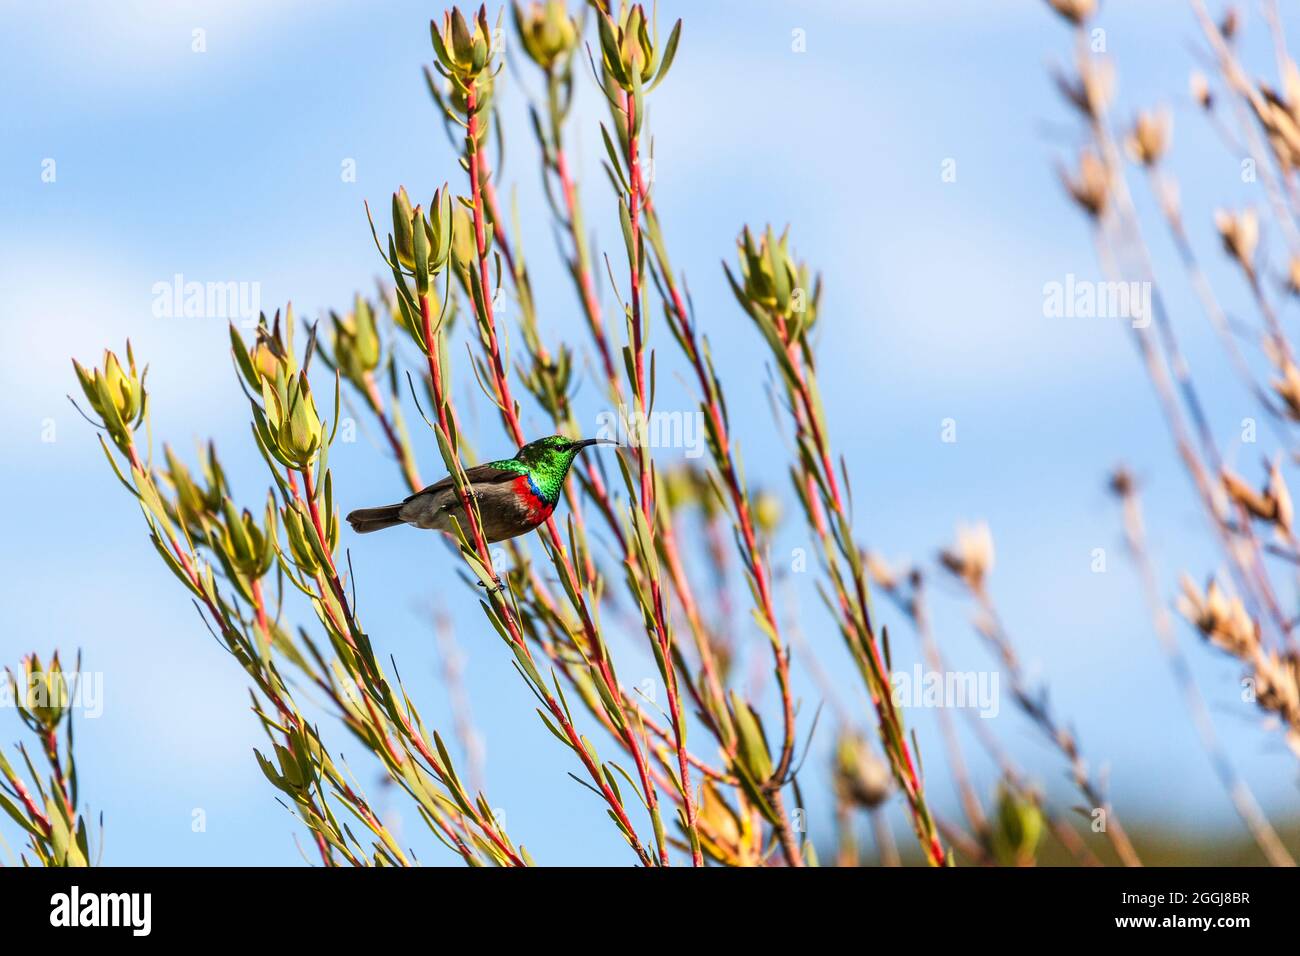 Portafolio de fotógrafos del año - Annette Lepple - Southern Lesser double colored sunbird - foto 5 de 8 sunbird Foto de stock